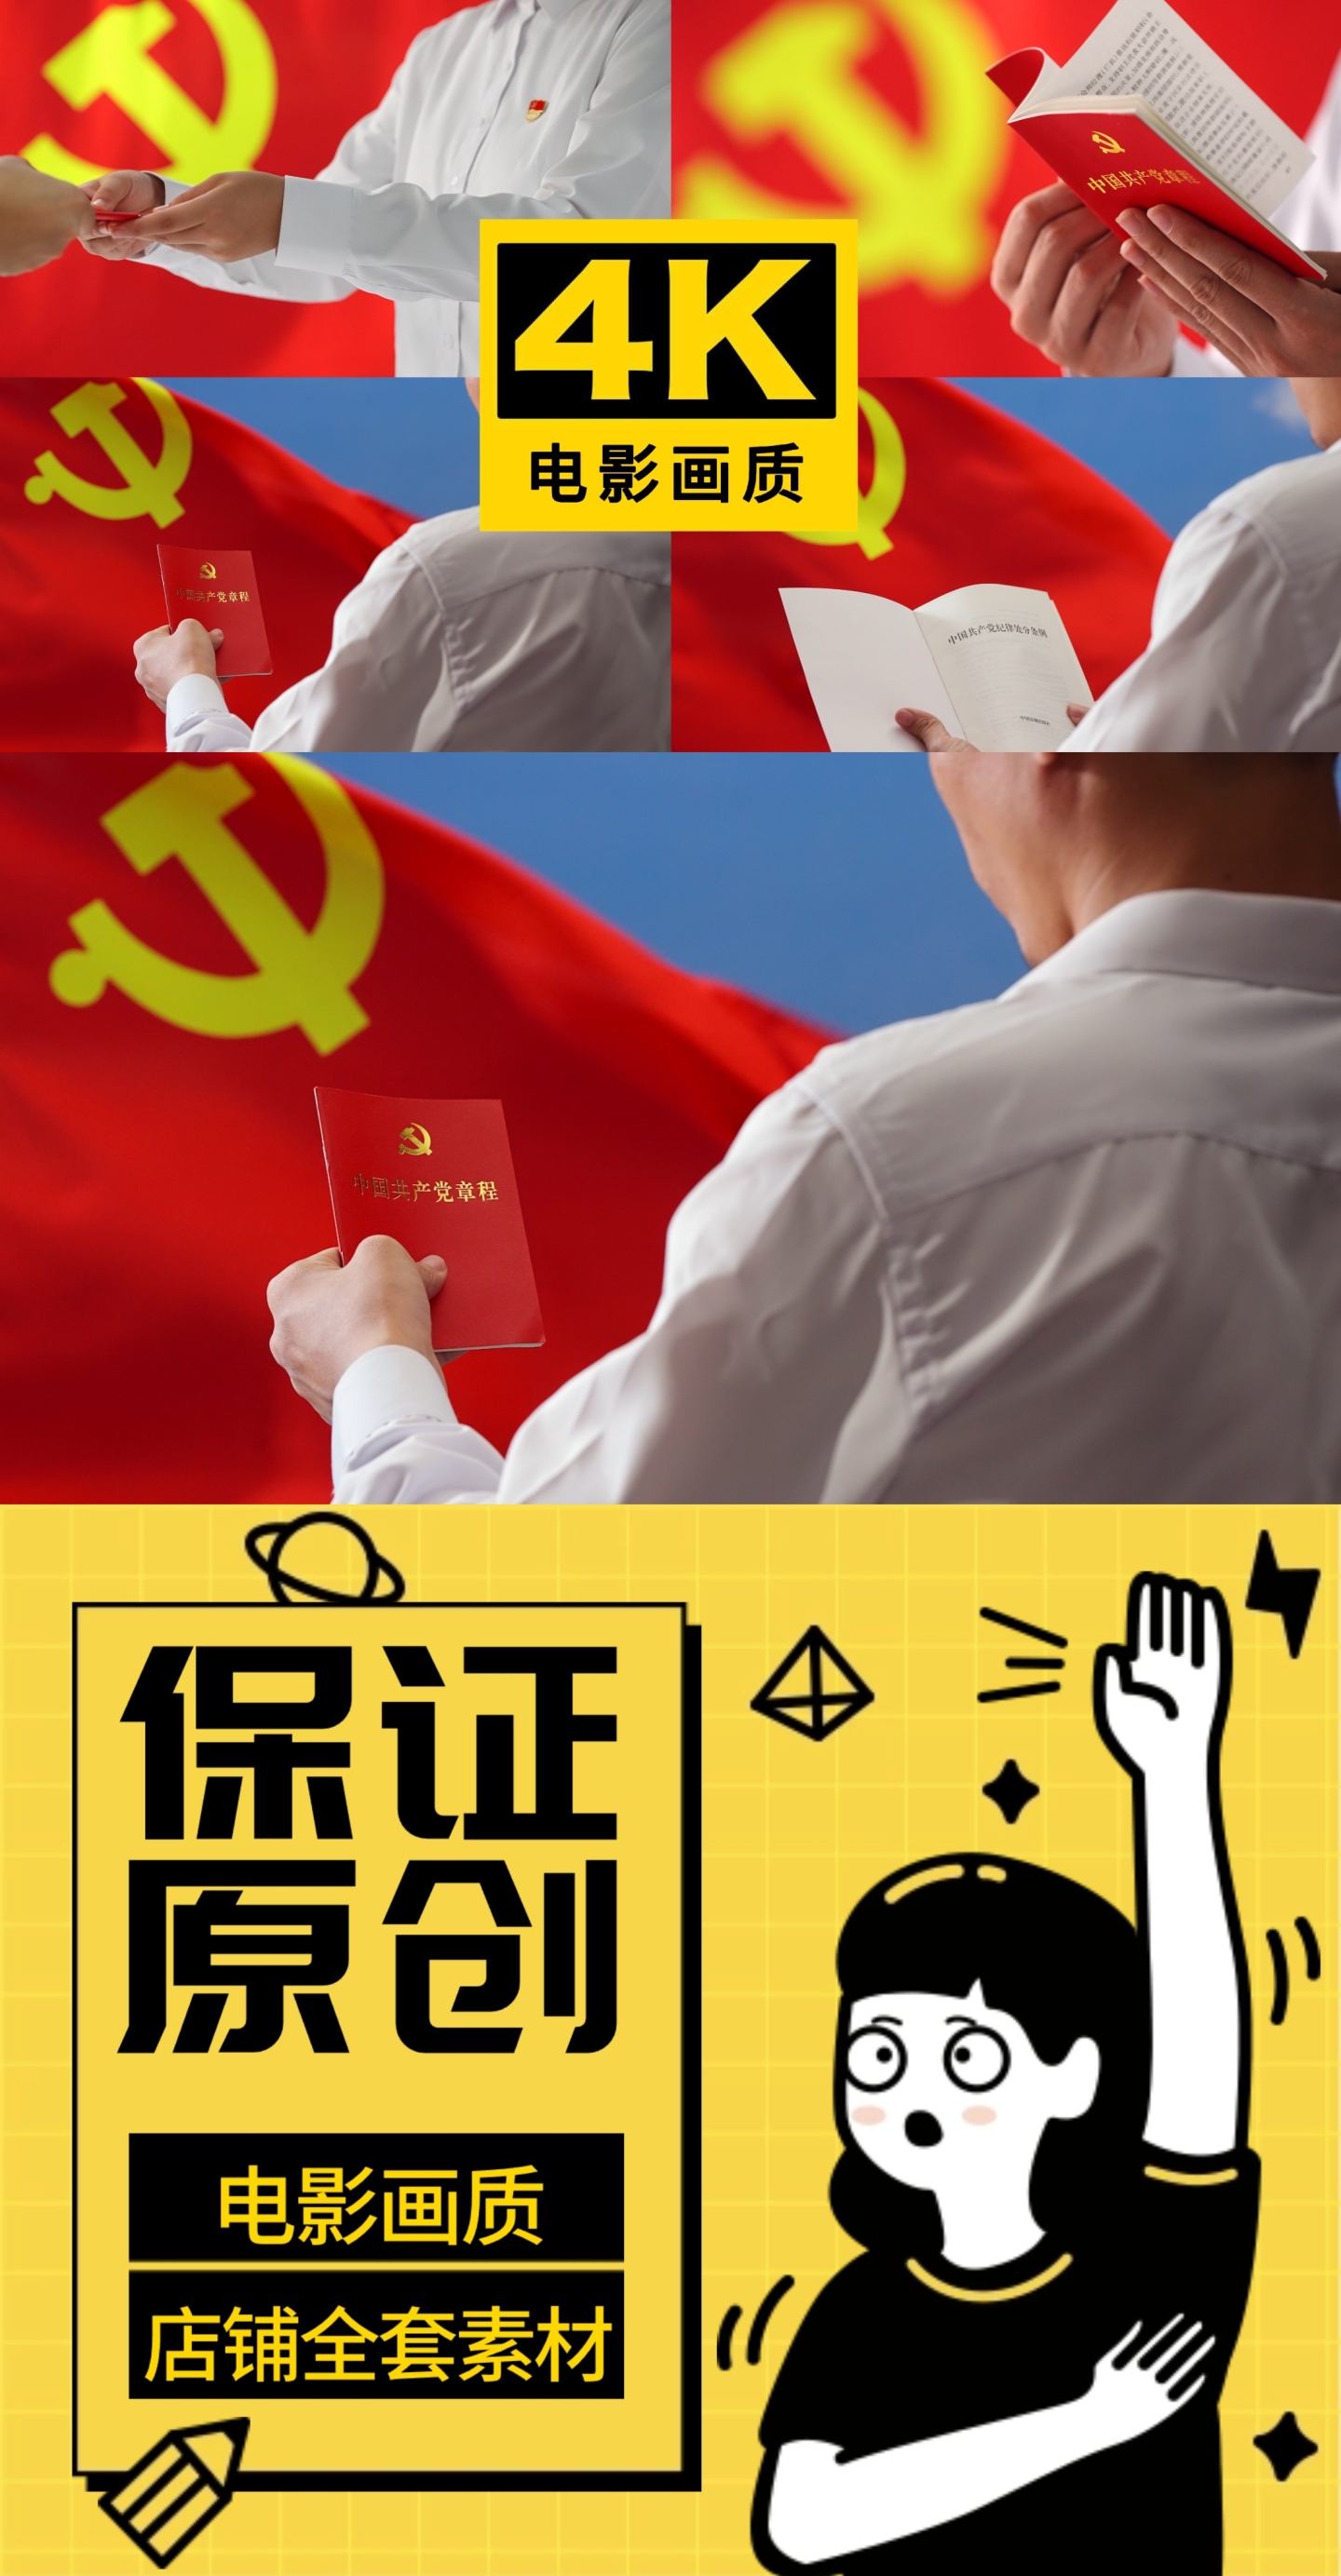 党qi旗帜前阅读党章